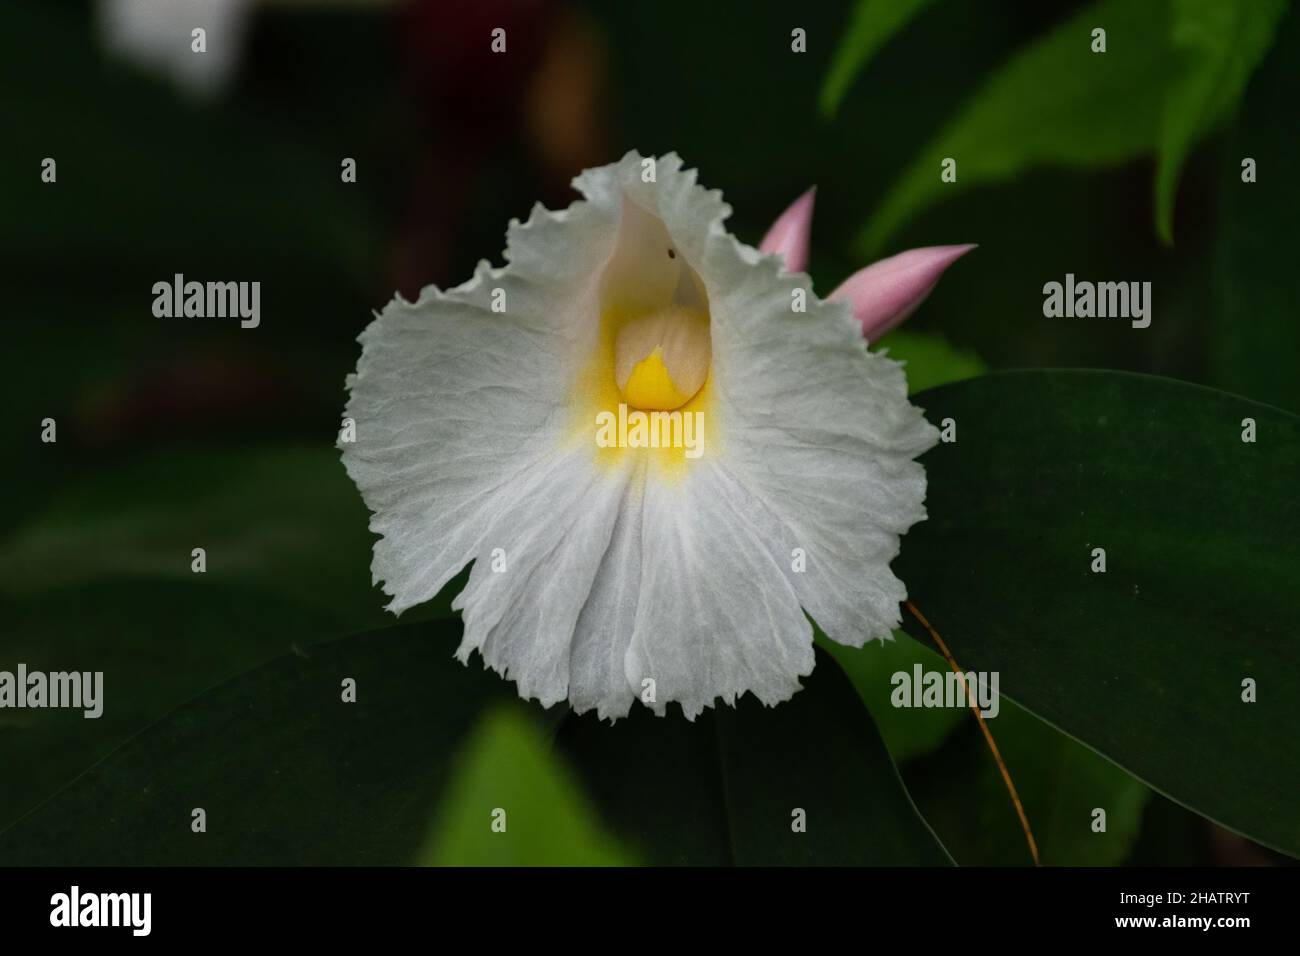 Primer plano de una flor de jengibre salvaje (costus speciosus) en el jardín. También conocida como la Planta de Insulina y se utiliza con fines medicinales. Foto de stock